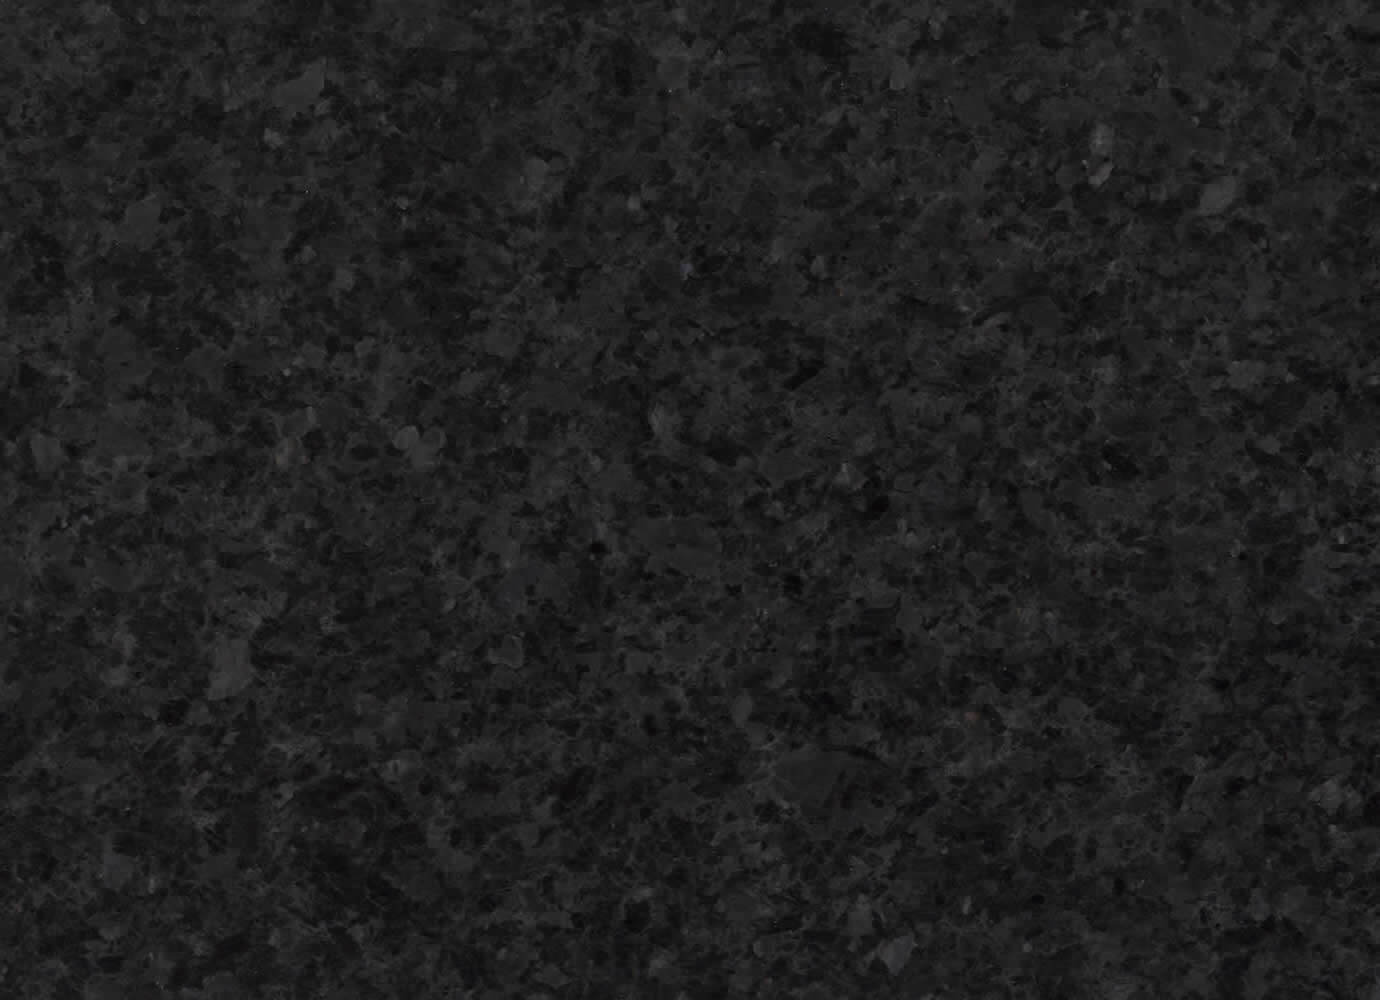 Angola Black granit